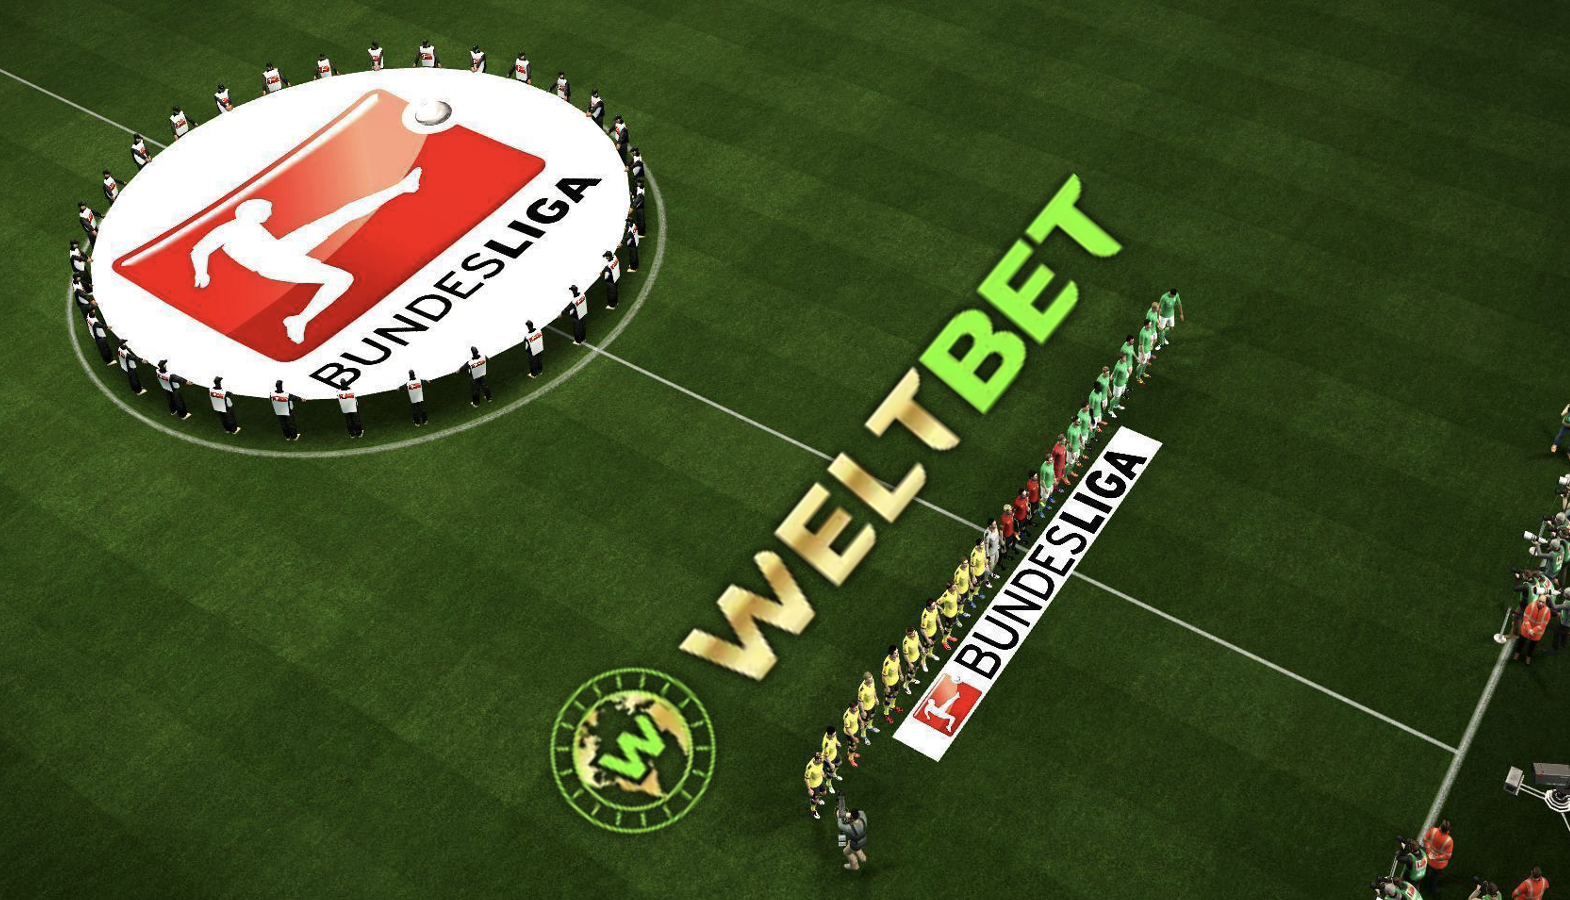 10 € Gratiswette auf die deutsche Bundesliga bei WeltBet